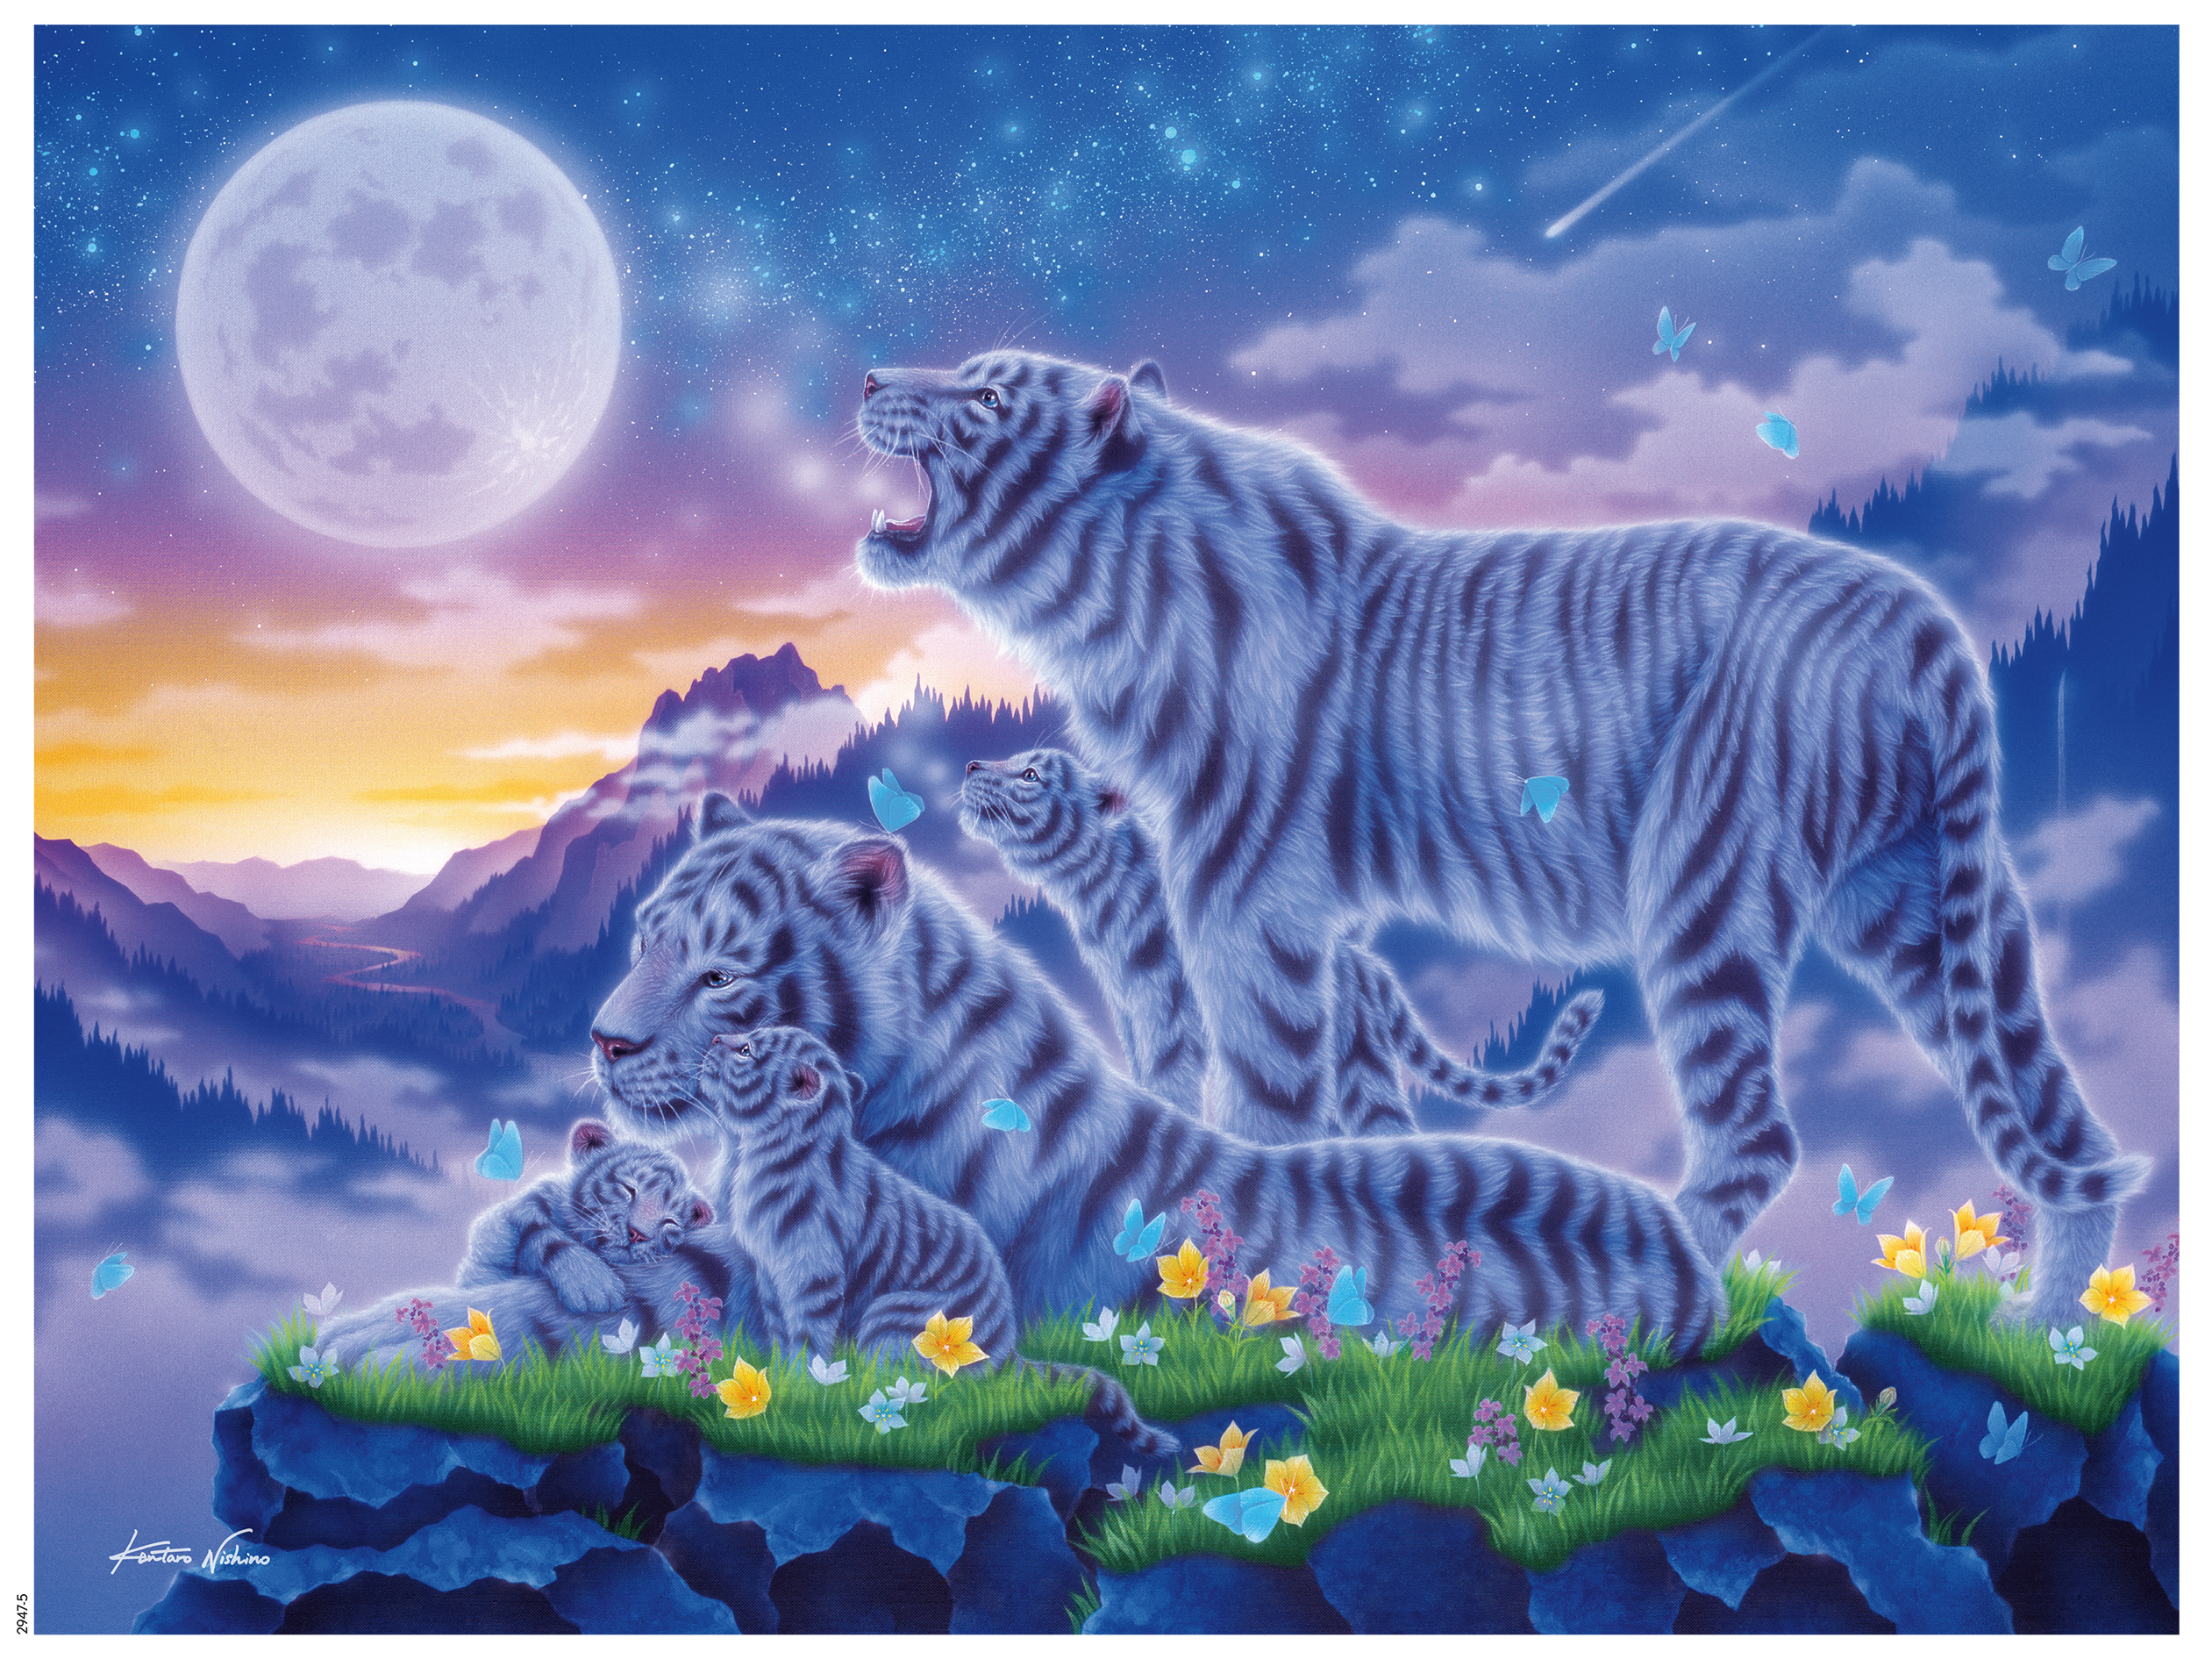 Tigers at Moonlight by Kentaro Fantasy Jigsaw Puzzle